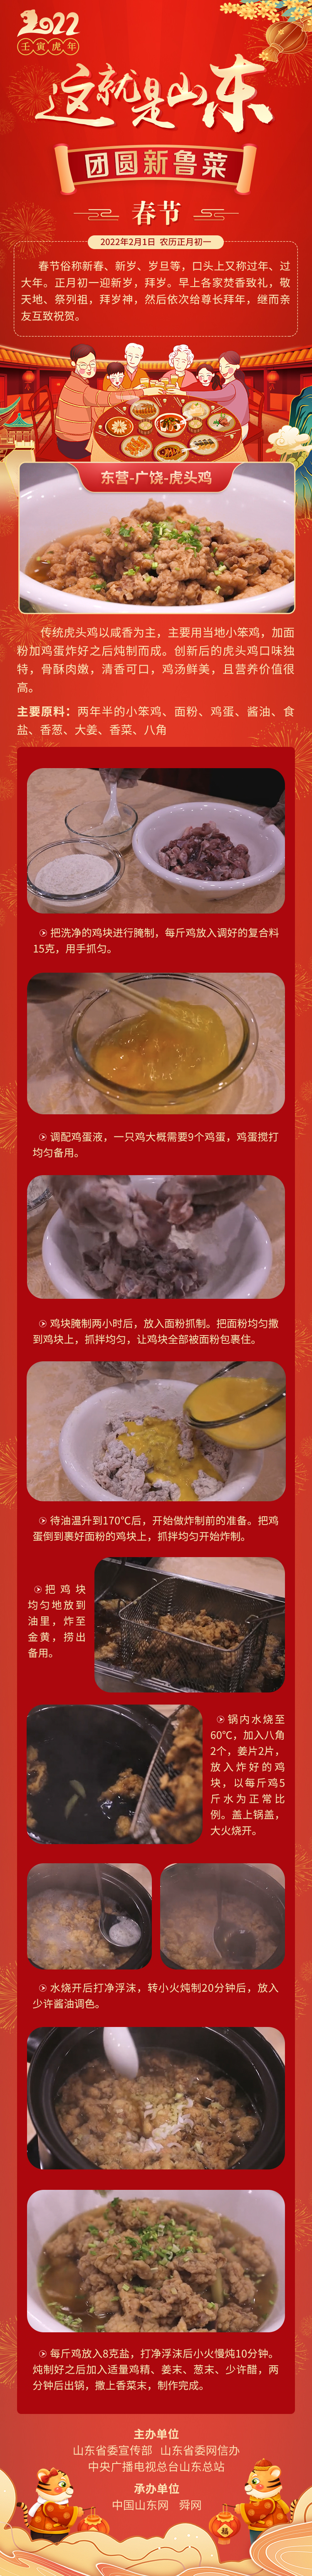 这就是山东·团圆新鲁菜——东营-广饶-虎头鸡